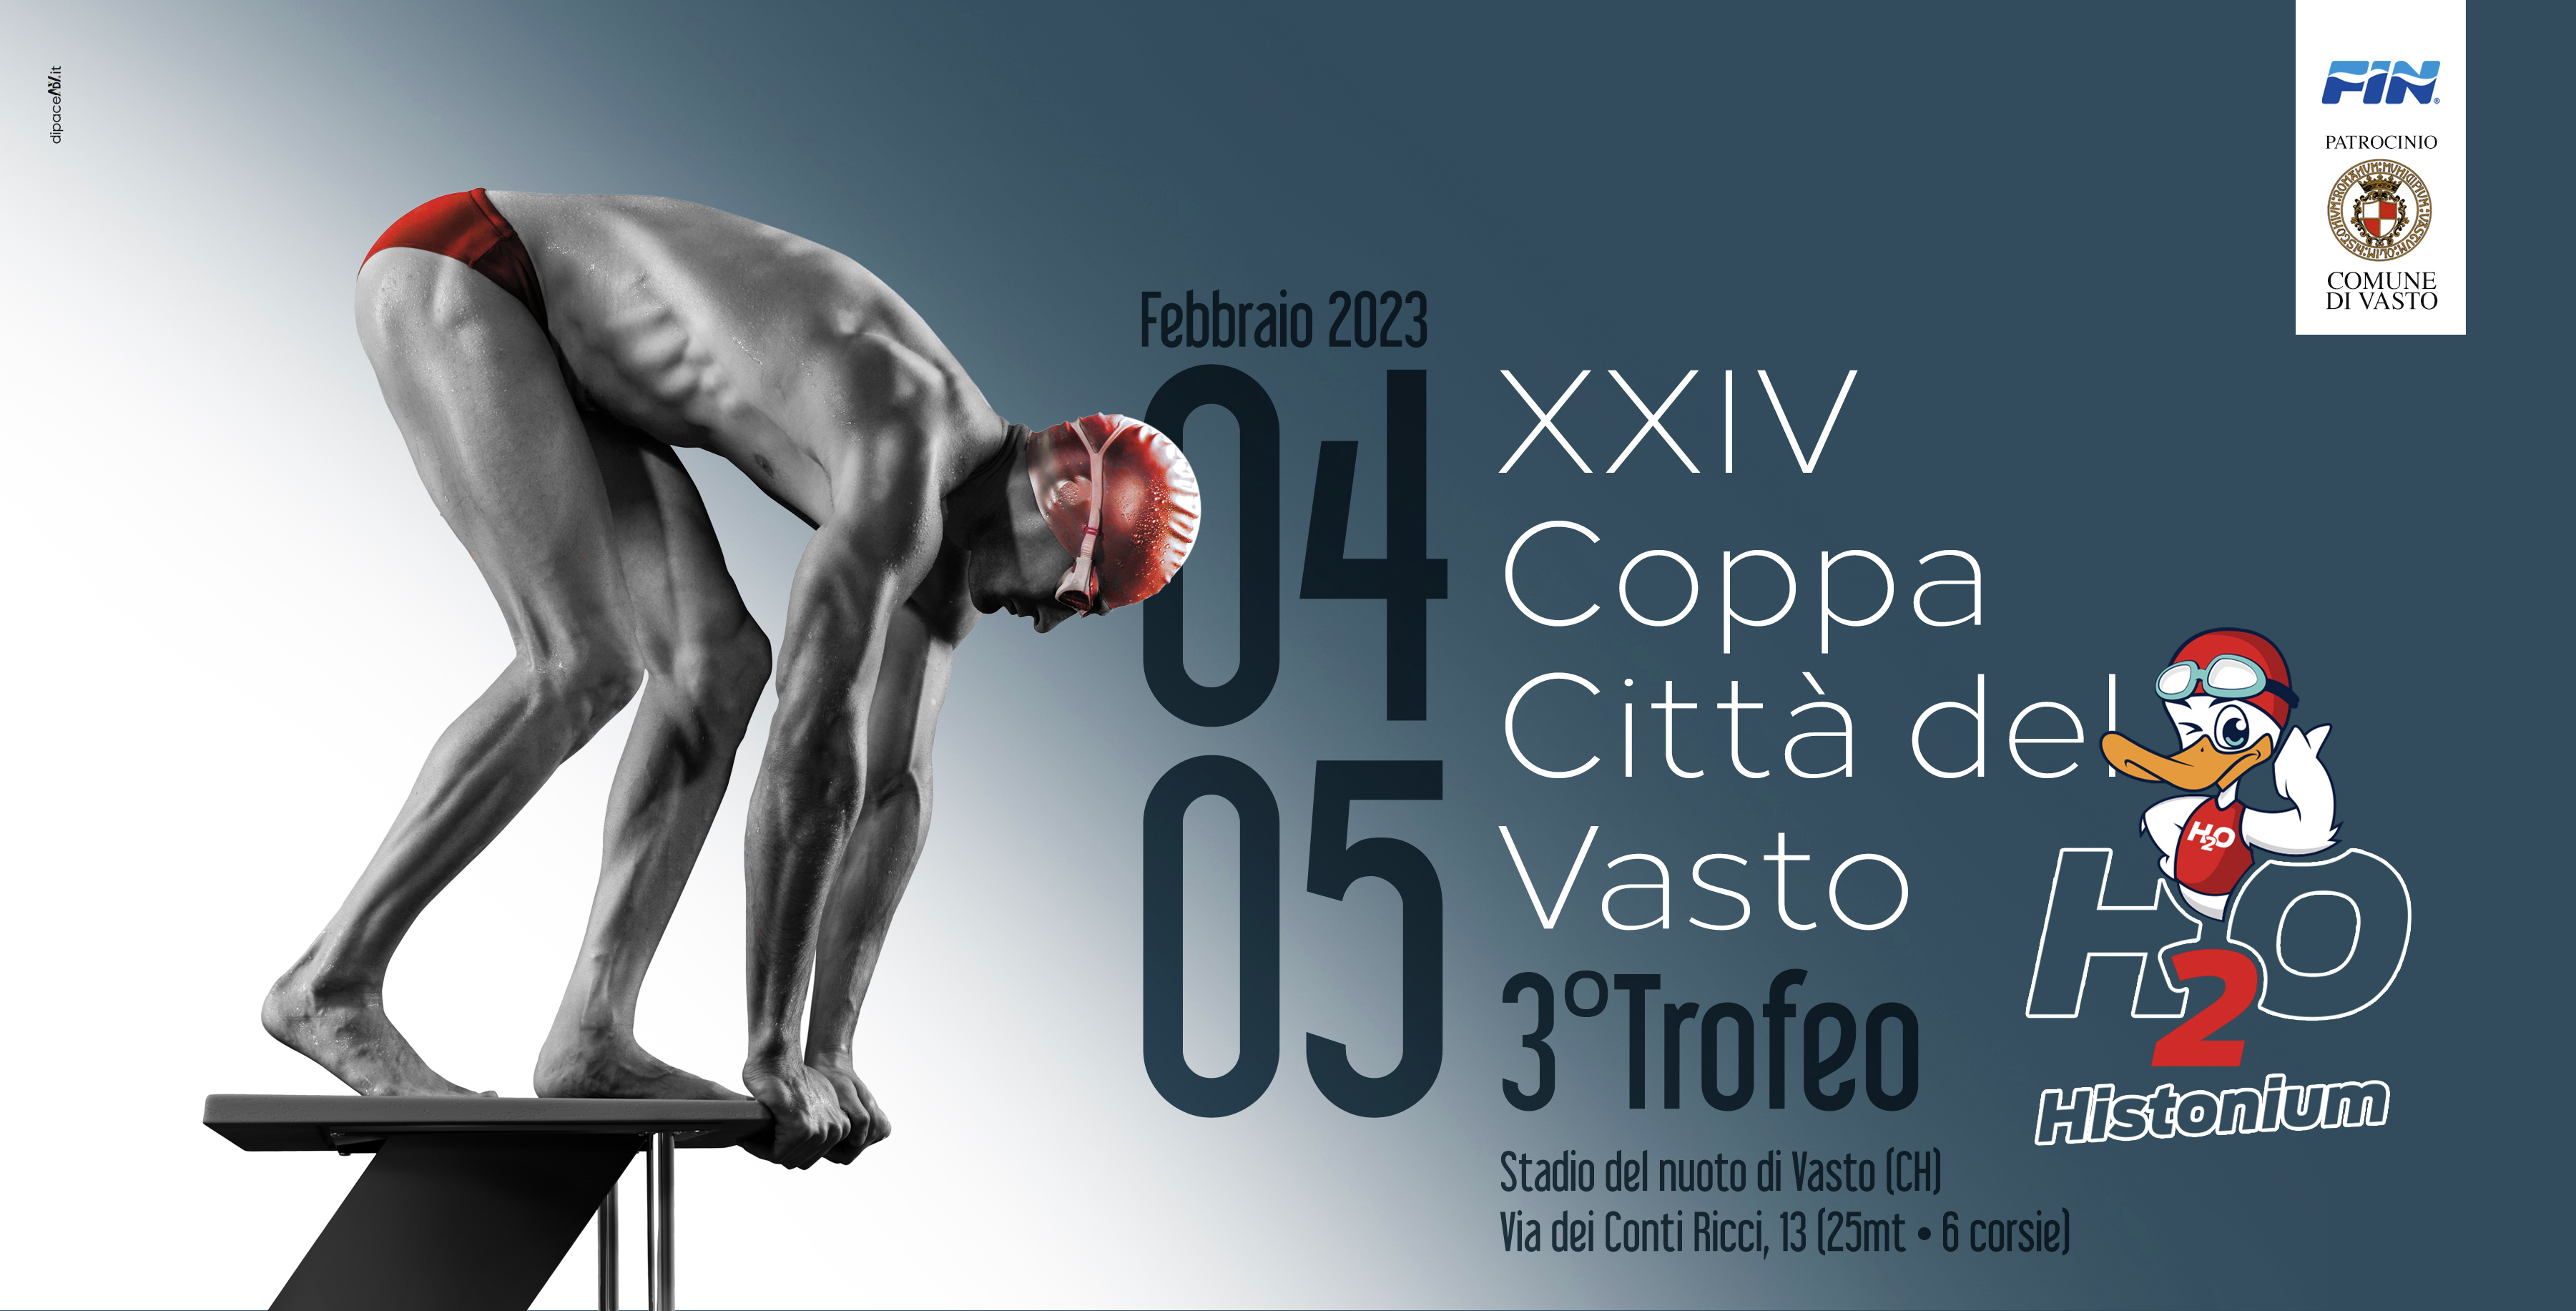 XXIV Coppa Città del Vasto – 3° Trofeo H2o Histonium